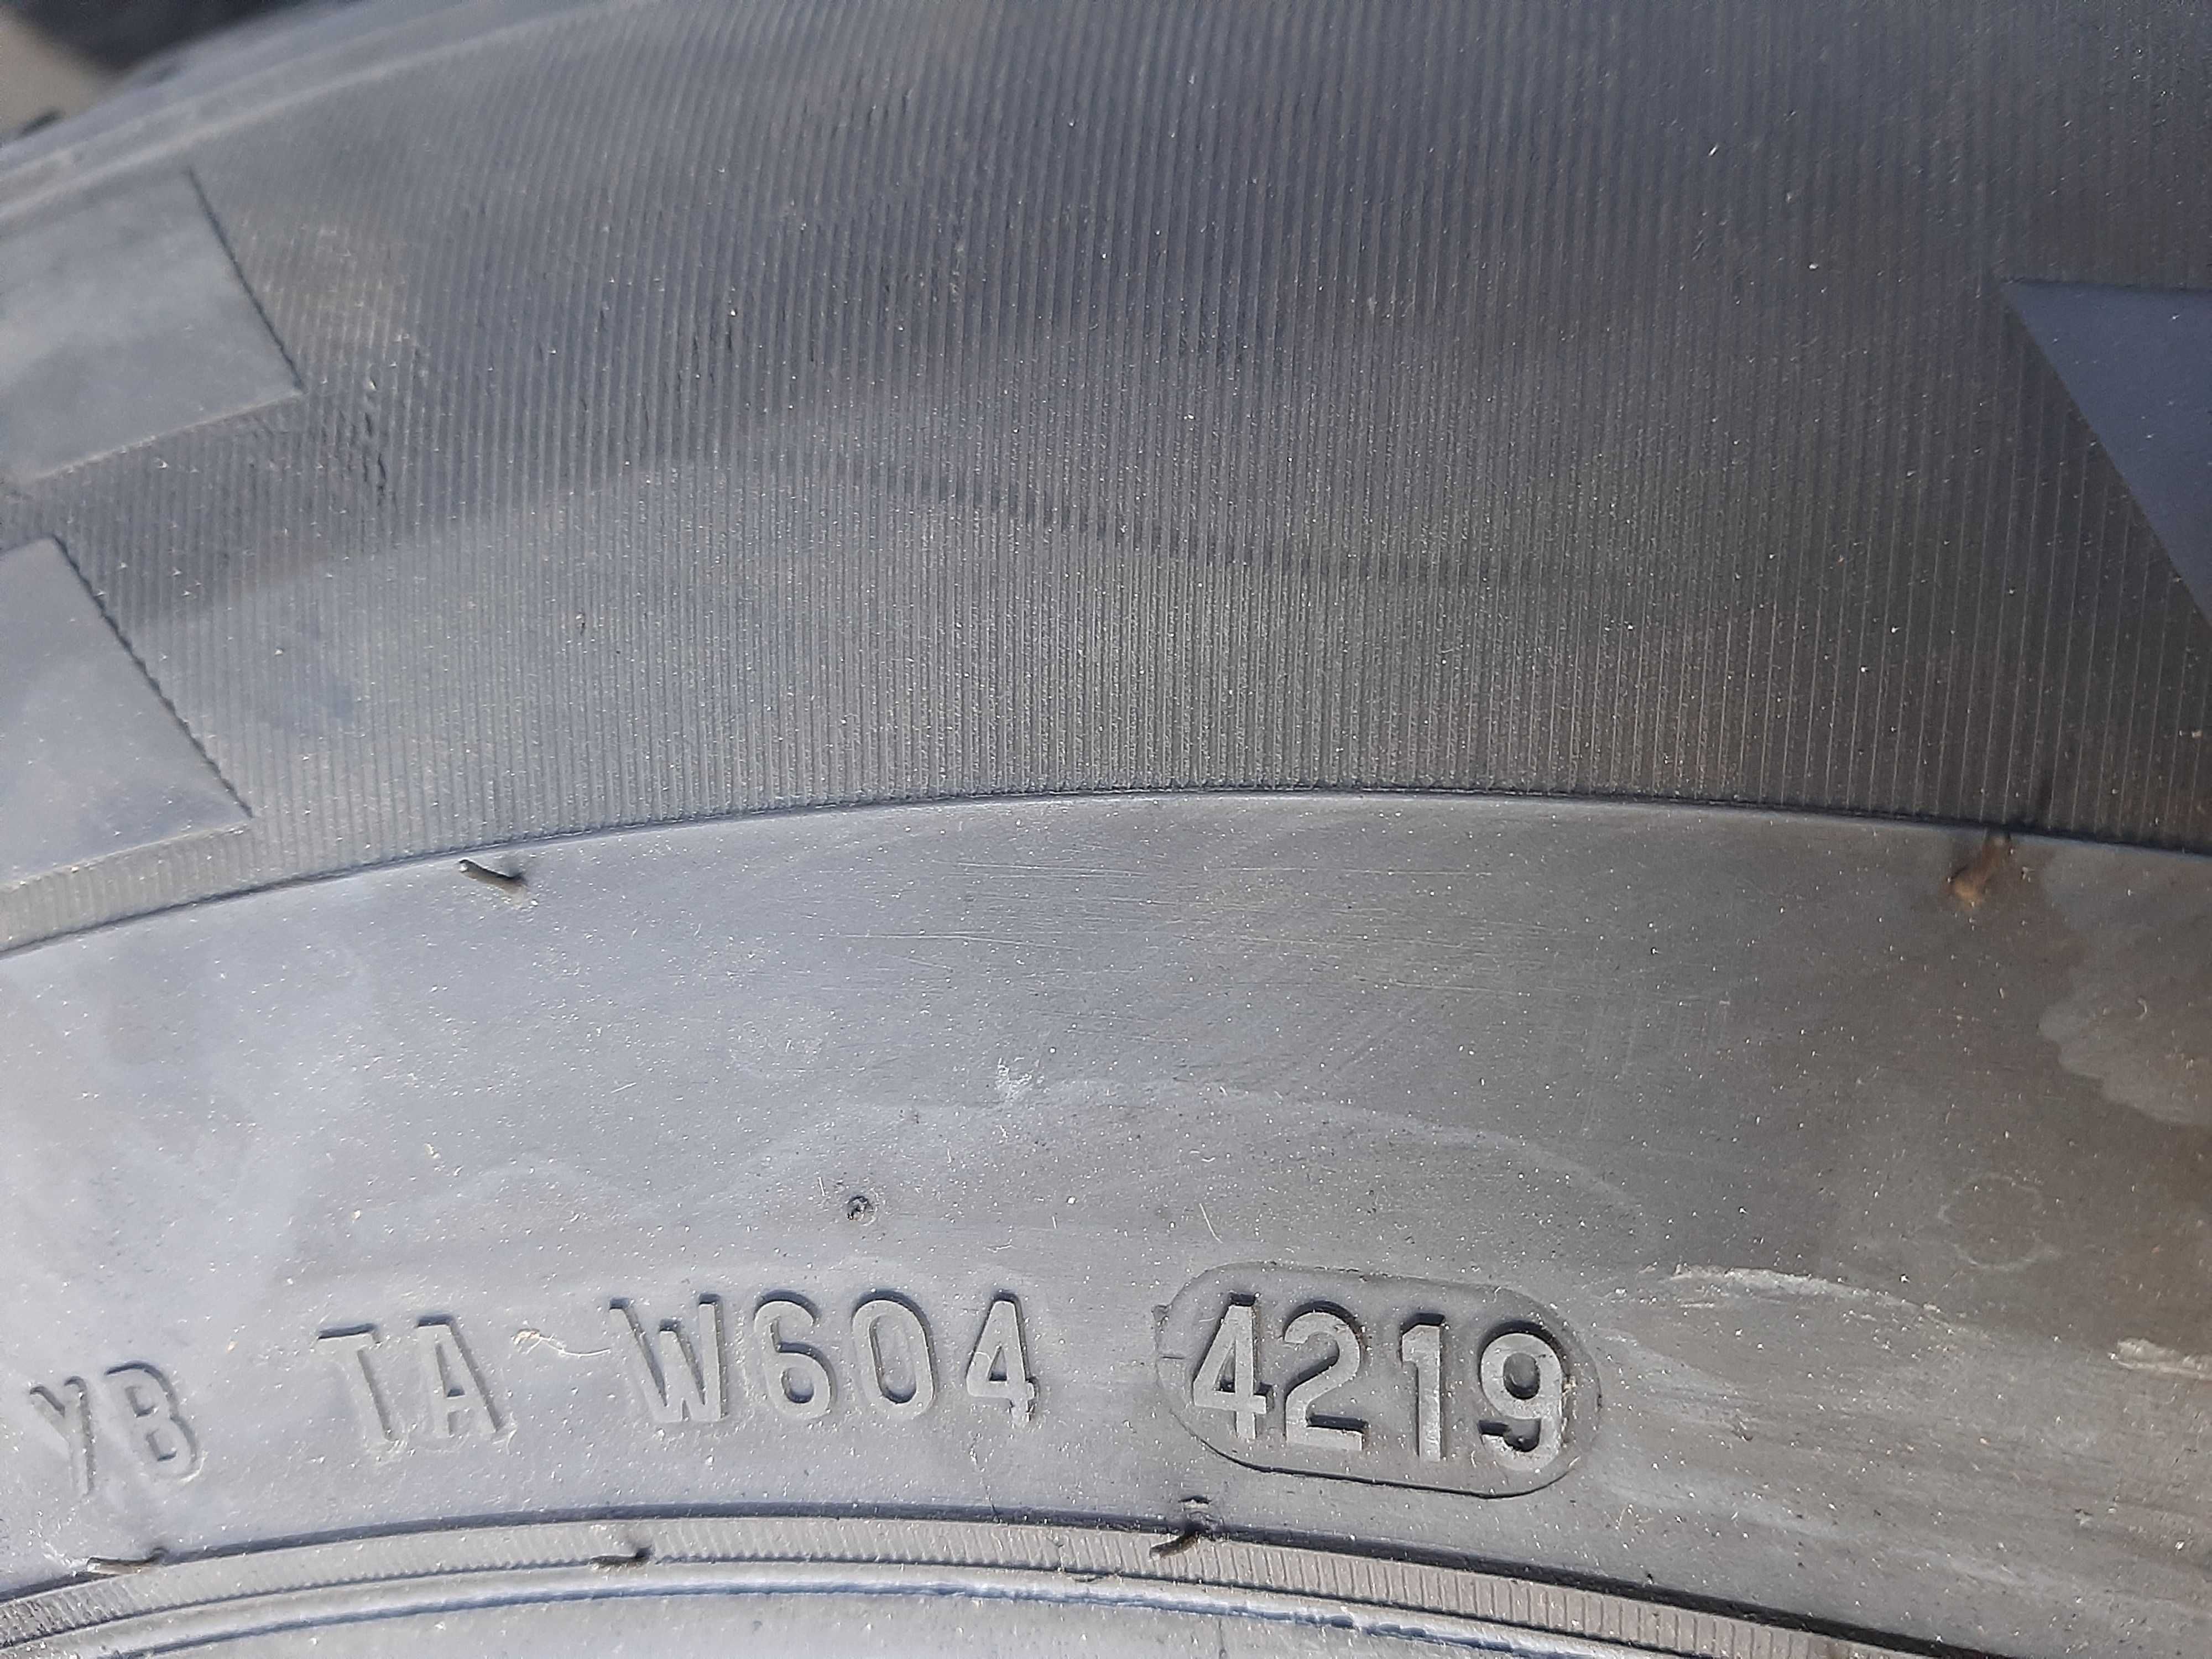 1x Opona zimowa 235/65R16C Pirelli Carrier Winter 7mm 2019r